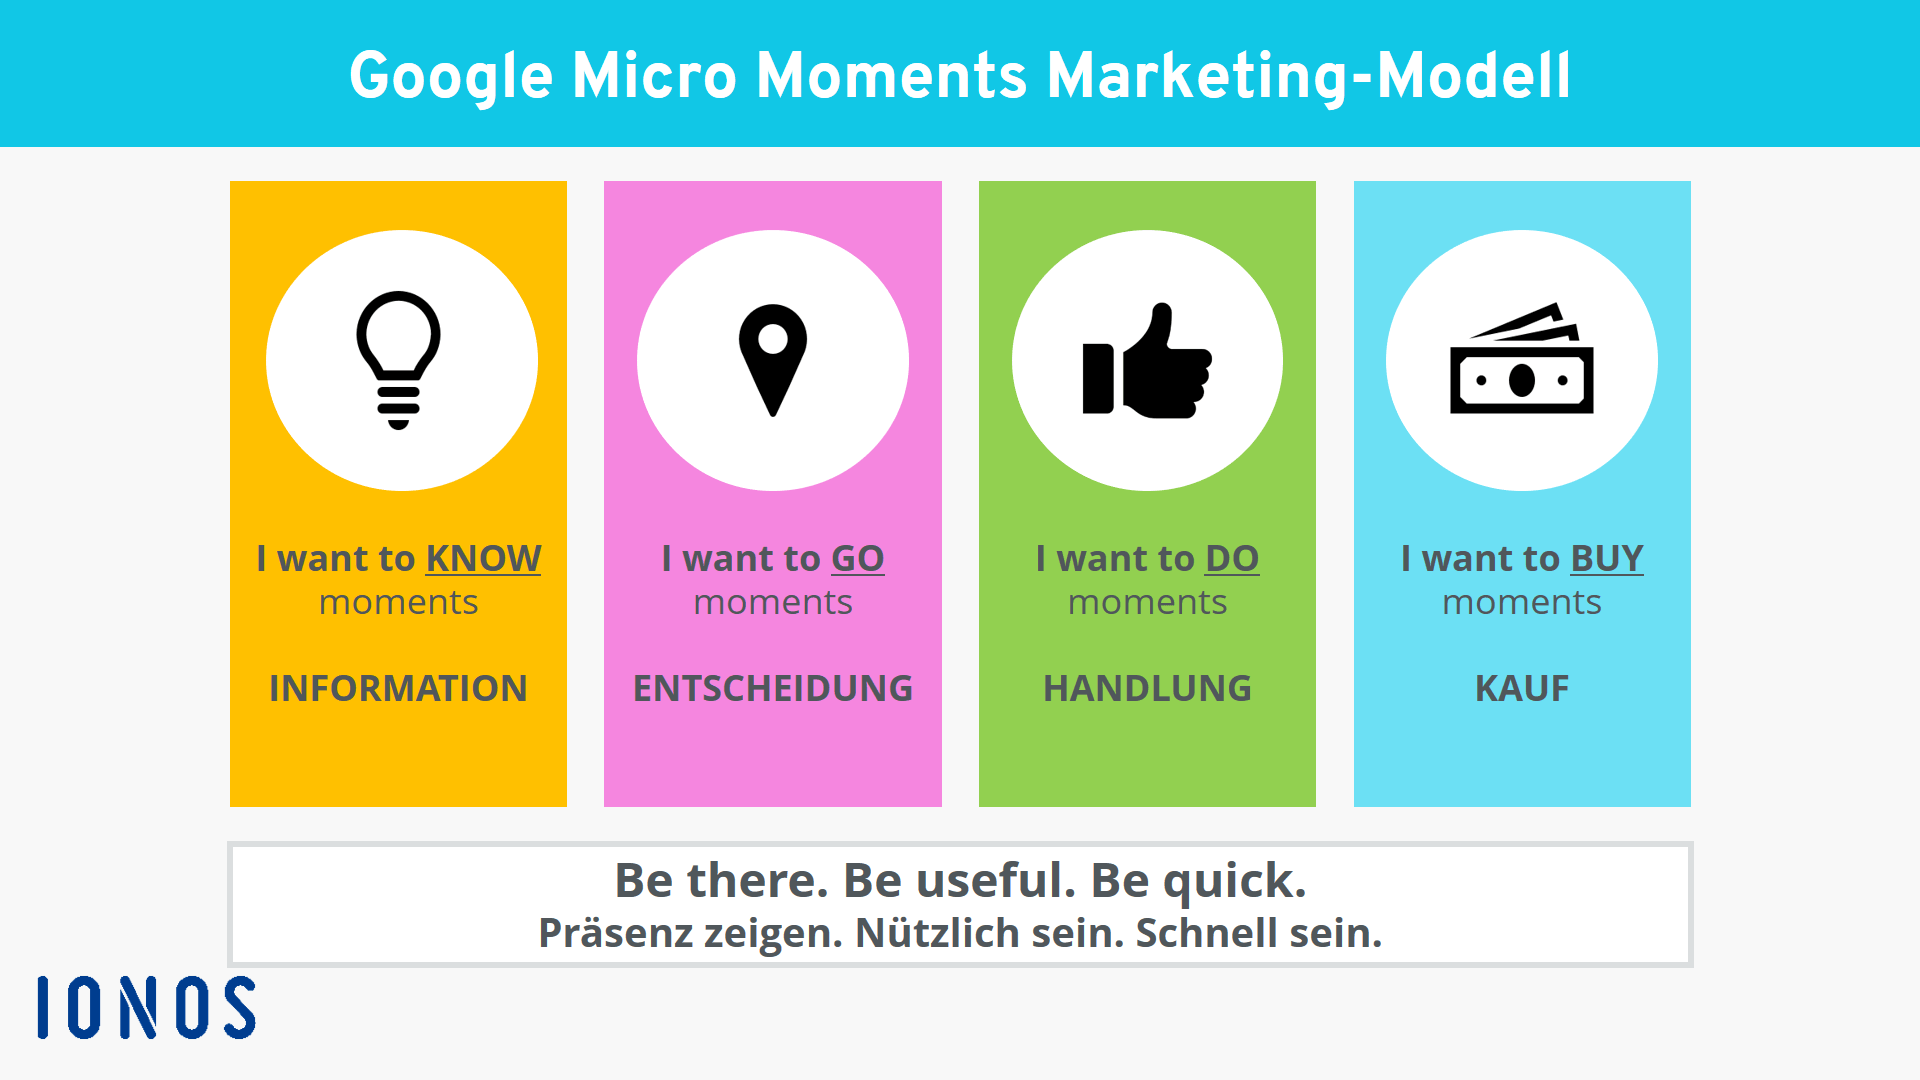 Darstellung der vier Micro Moments gemäß Google